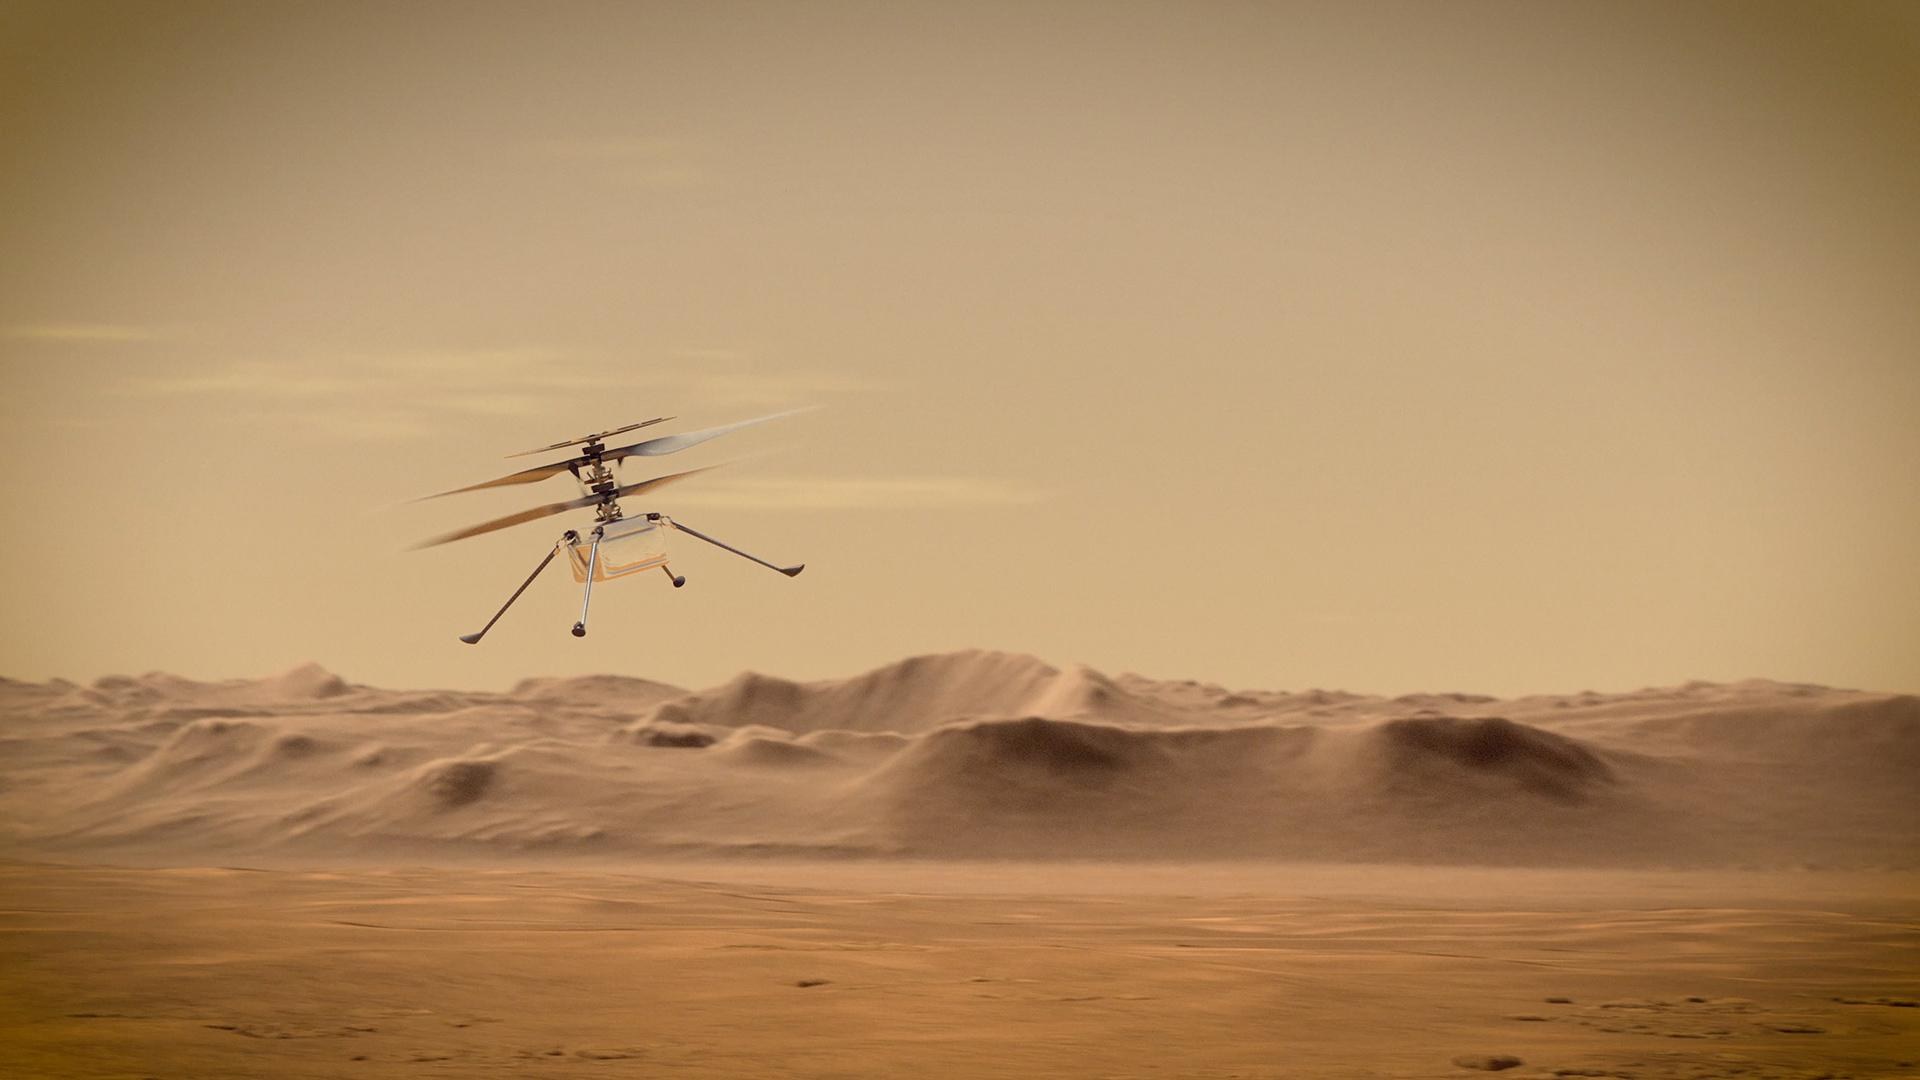 Mars-Helikopter "Ingenuity" der Mission Mars 2020